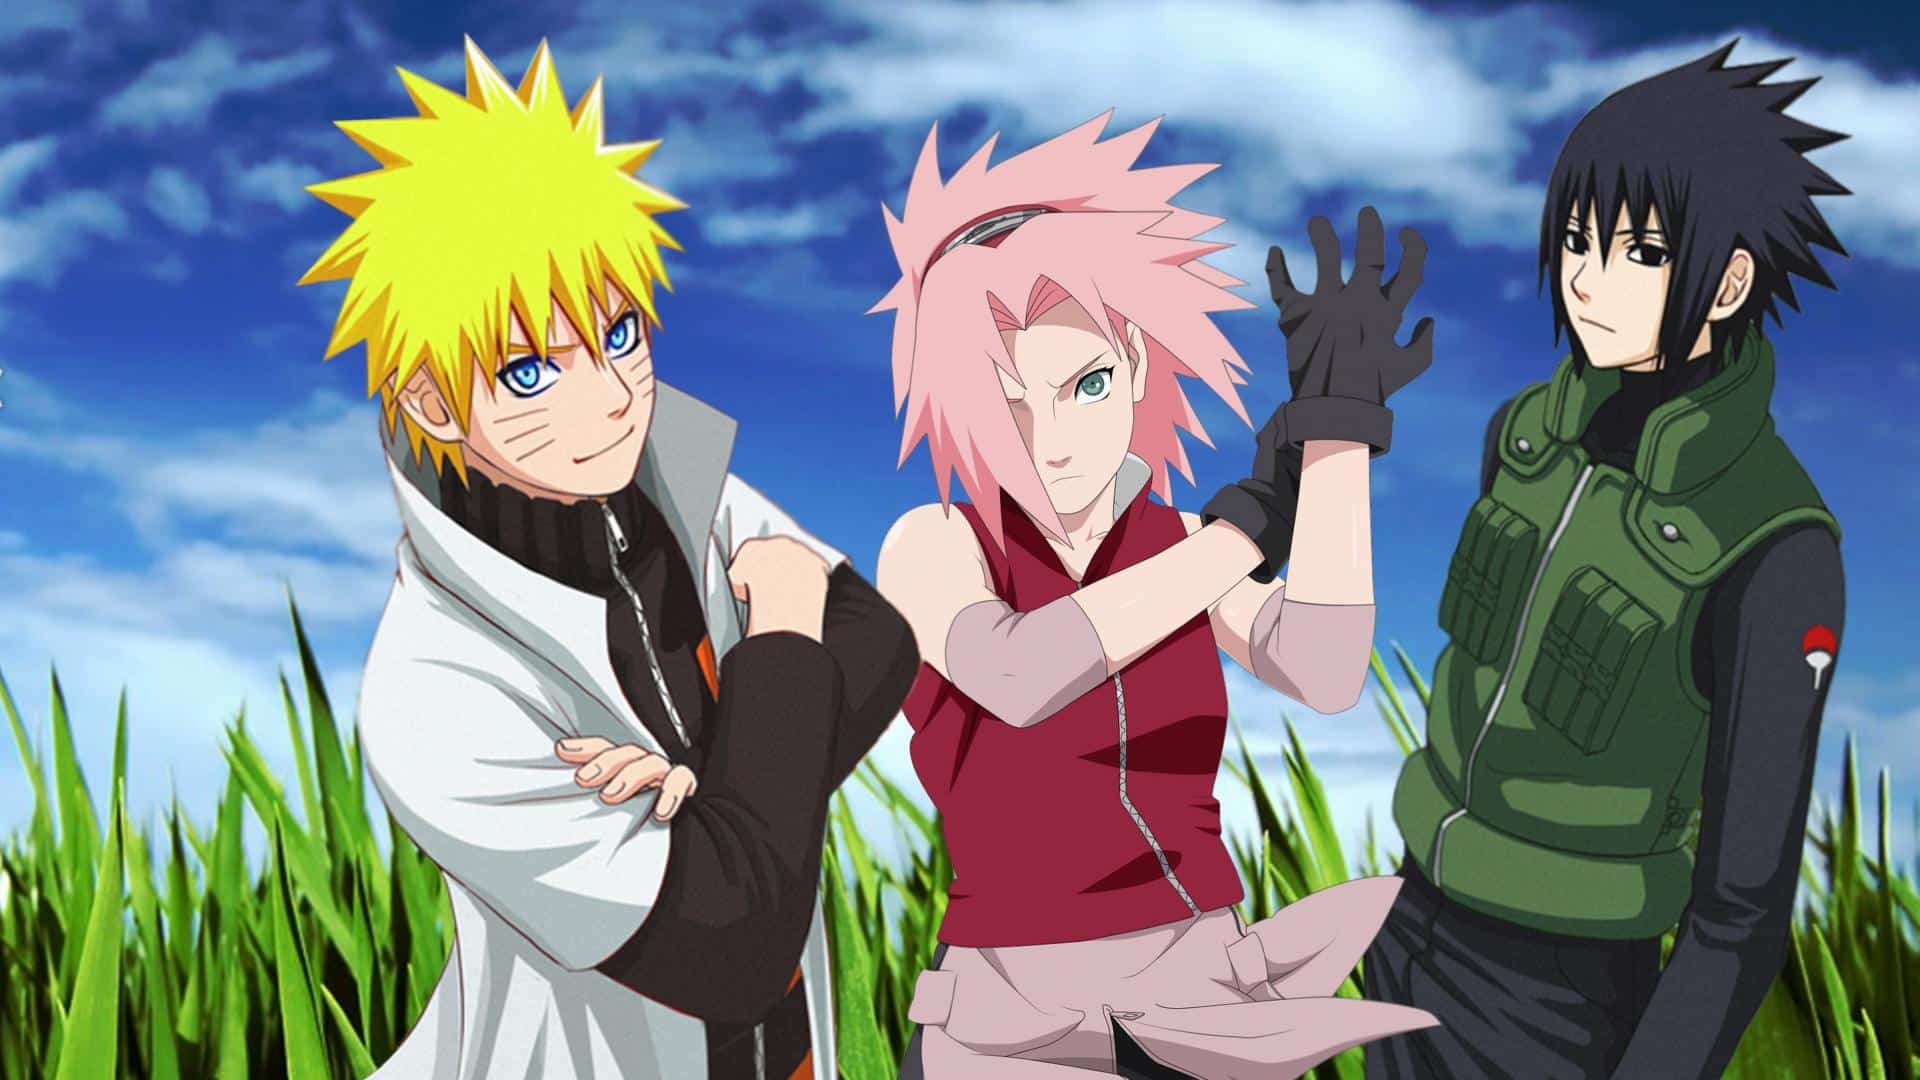 Hãy xem hình nền đôi Naruto và Sasuke đầy lãng mạn này để cảm nhận tình bạn đích thực của họ. Với tình cảm mãnh liệt và những trận đấu kịch tính, đây chắc chắn sẽ là trải nghiệm thú vị cho các fan của Naruto!